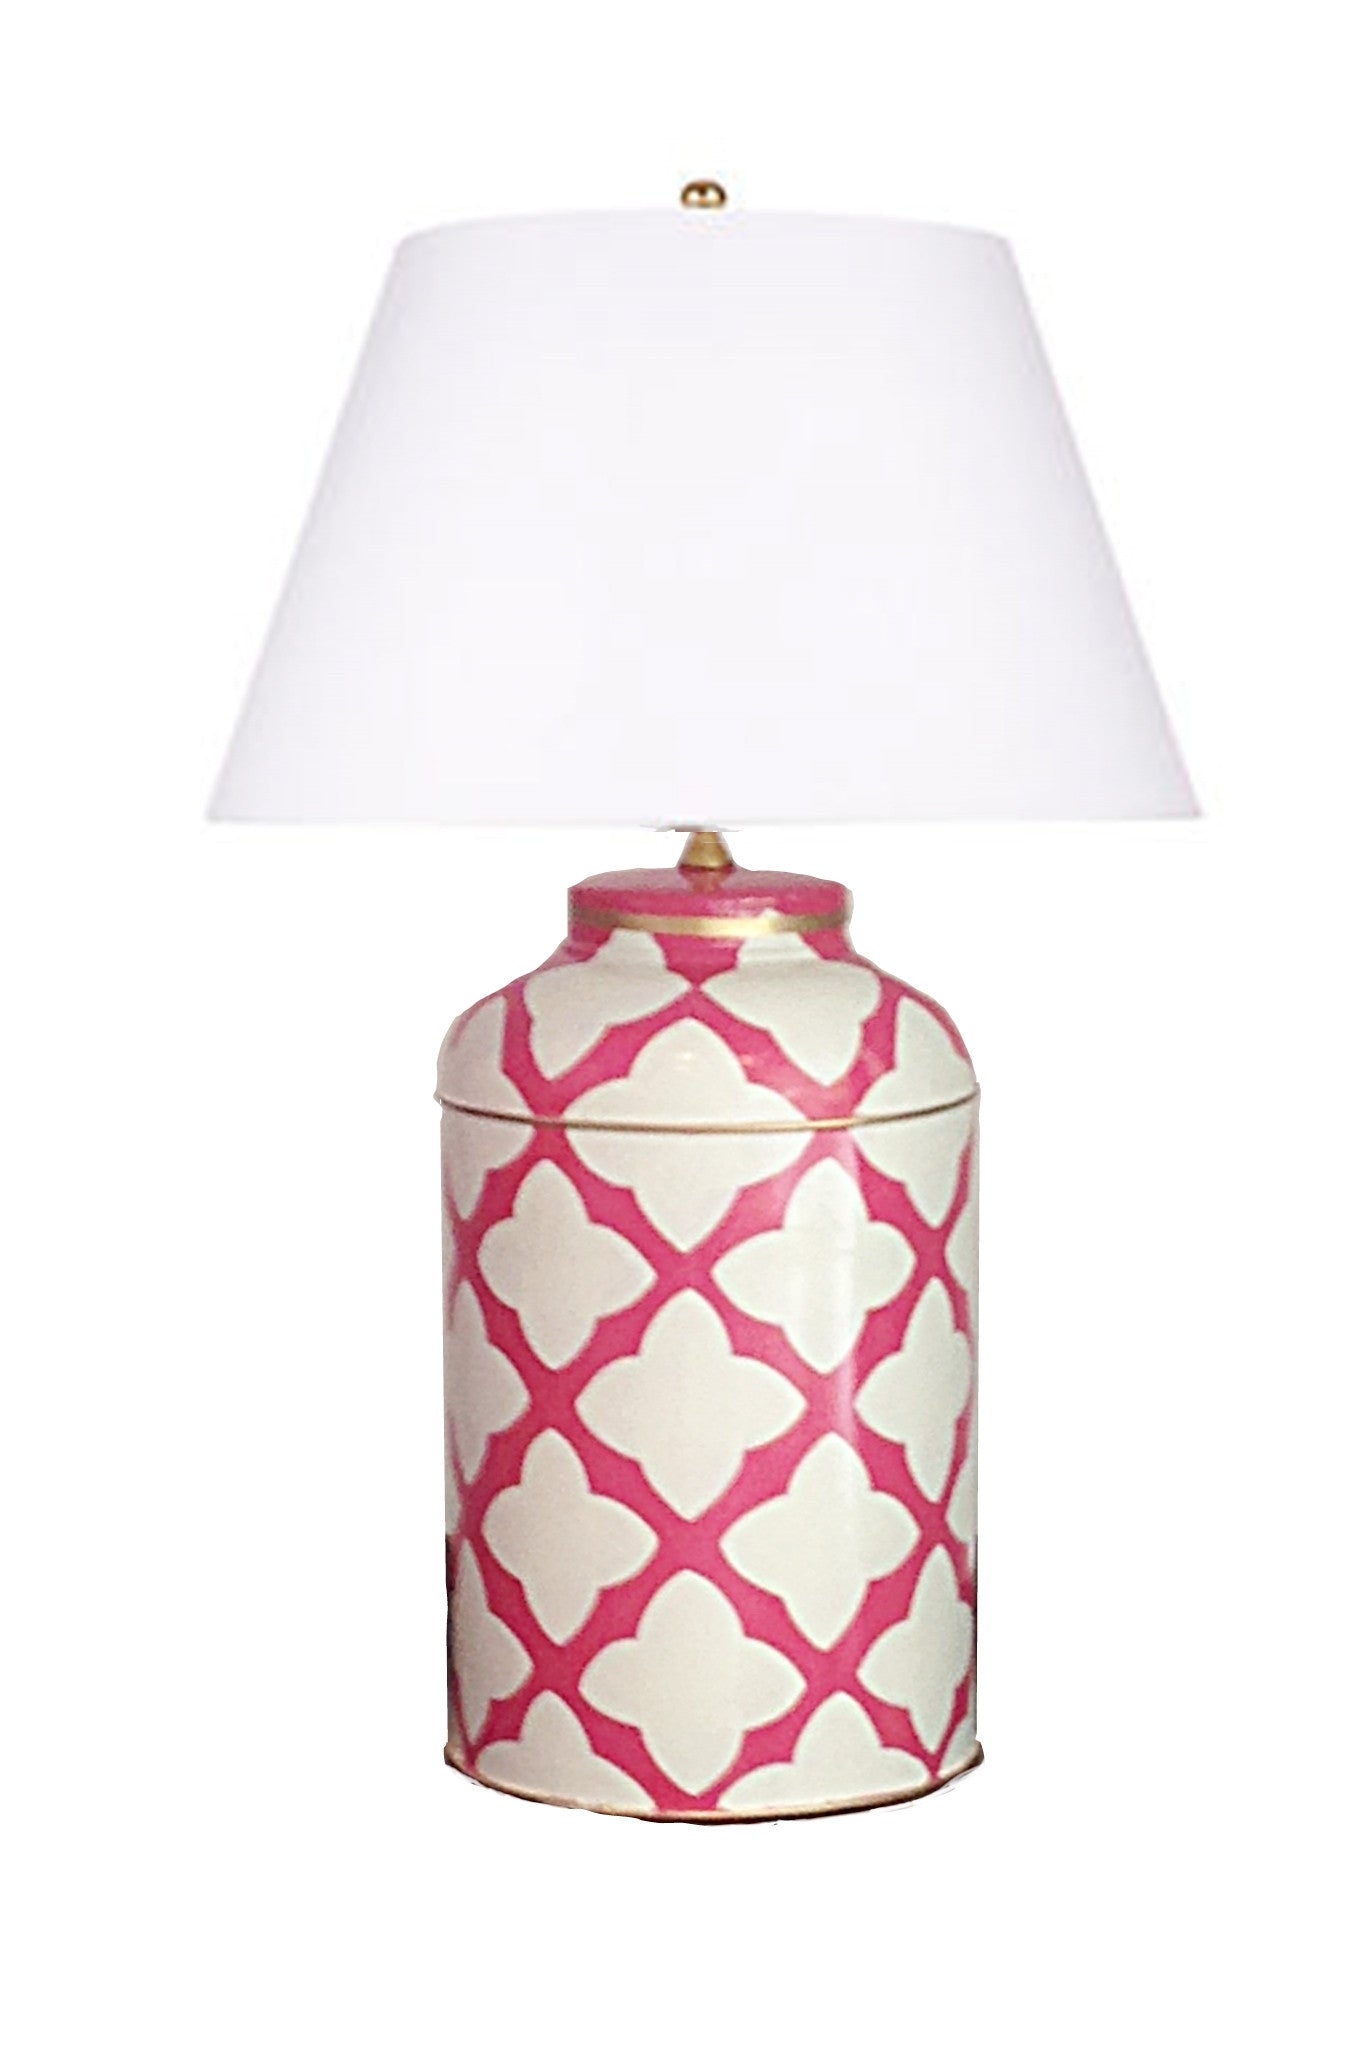 Dana Gibson Moda in Pink Lamp